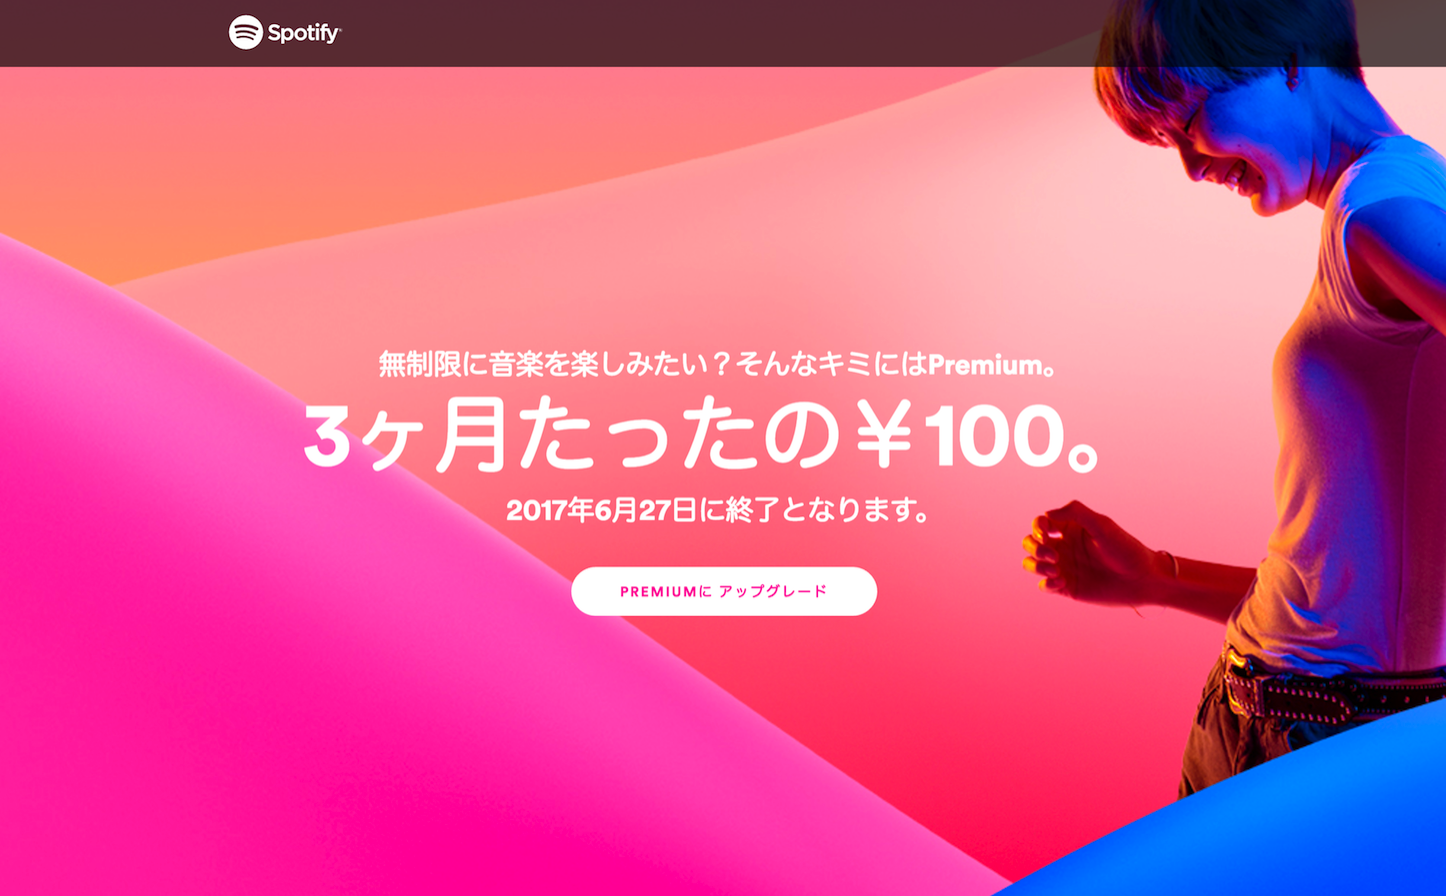 Spotify-Premium-100yen-Campaign-2.png